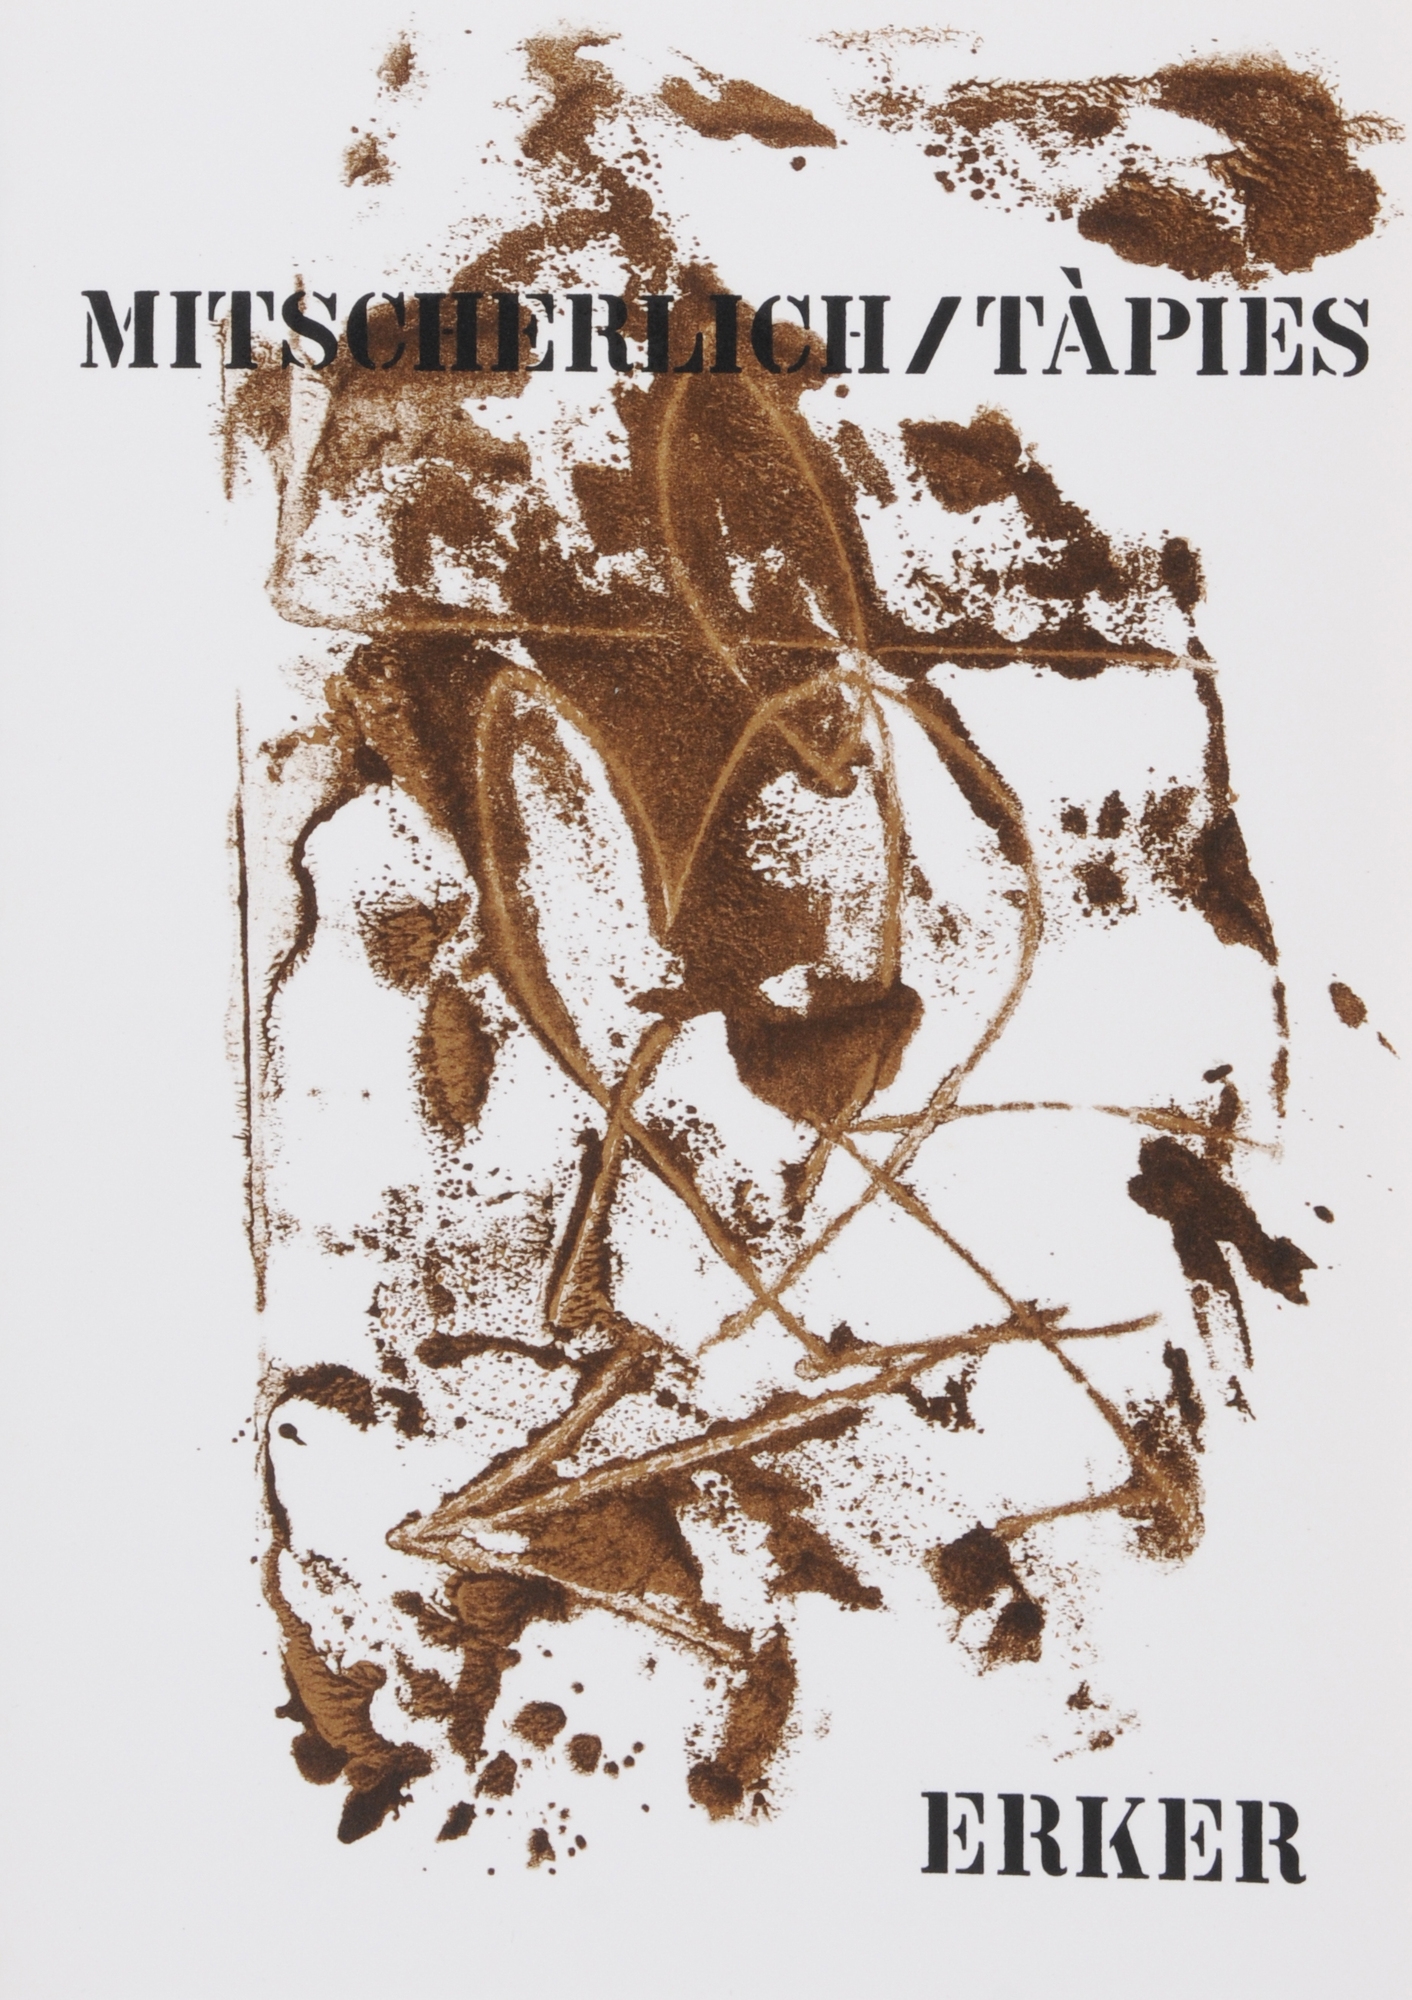 Artwork by Antoni Tàpies, Portfolio. Sinnieren über Schmutz, Made of lithographs printed in colors